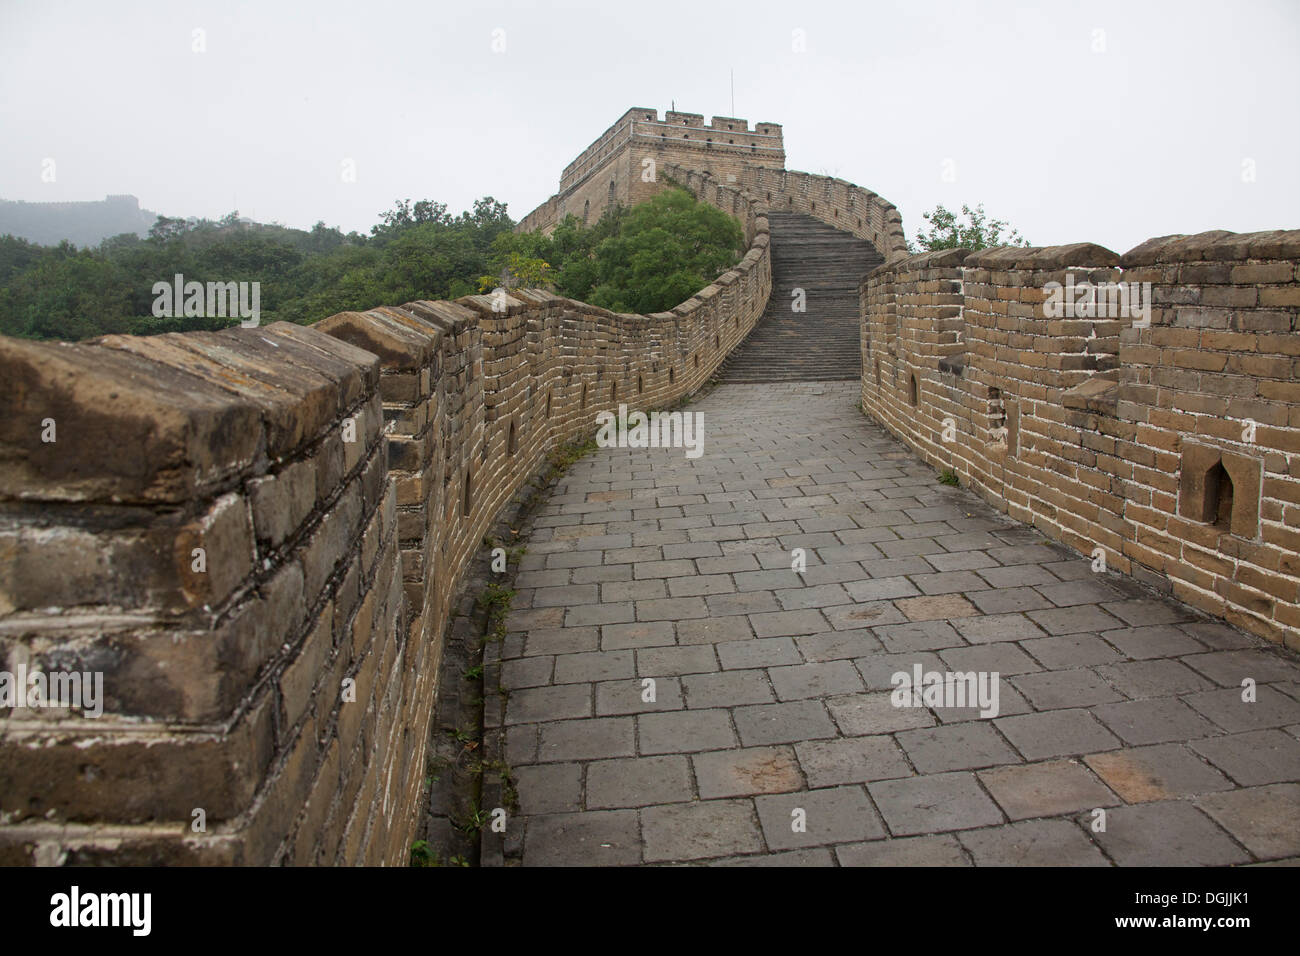 La Grande Muraglia della Cina Große chinesische Mauer, Pechino, Cina, Repubblica Popolare di Cina Foto Stock